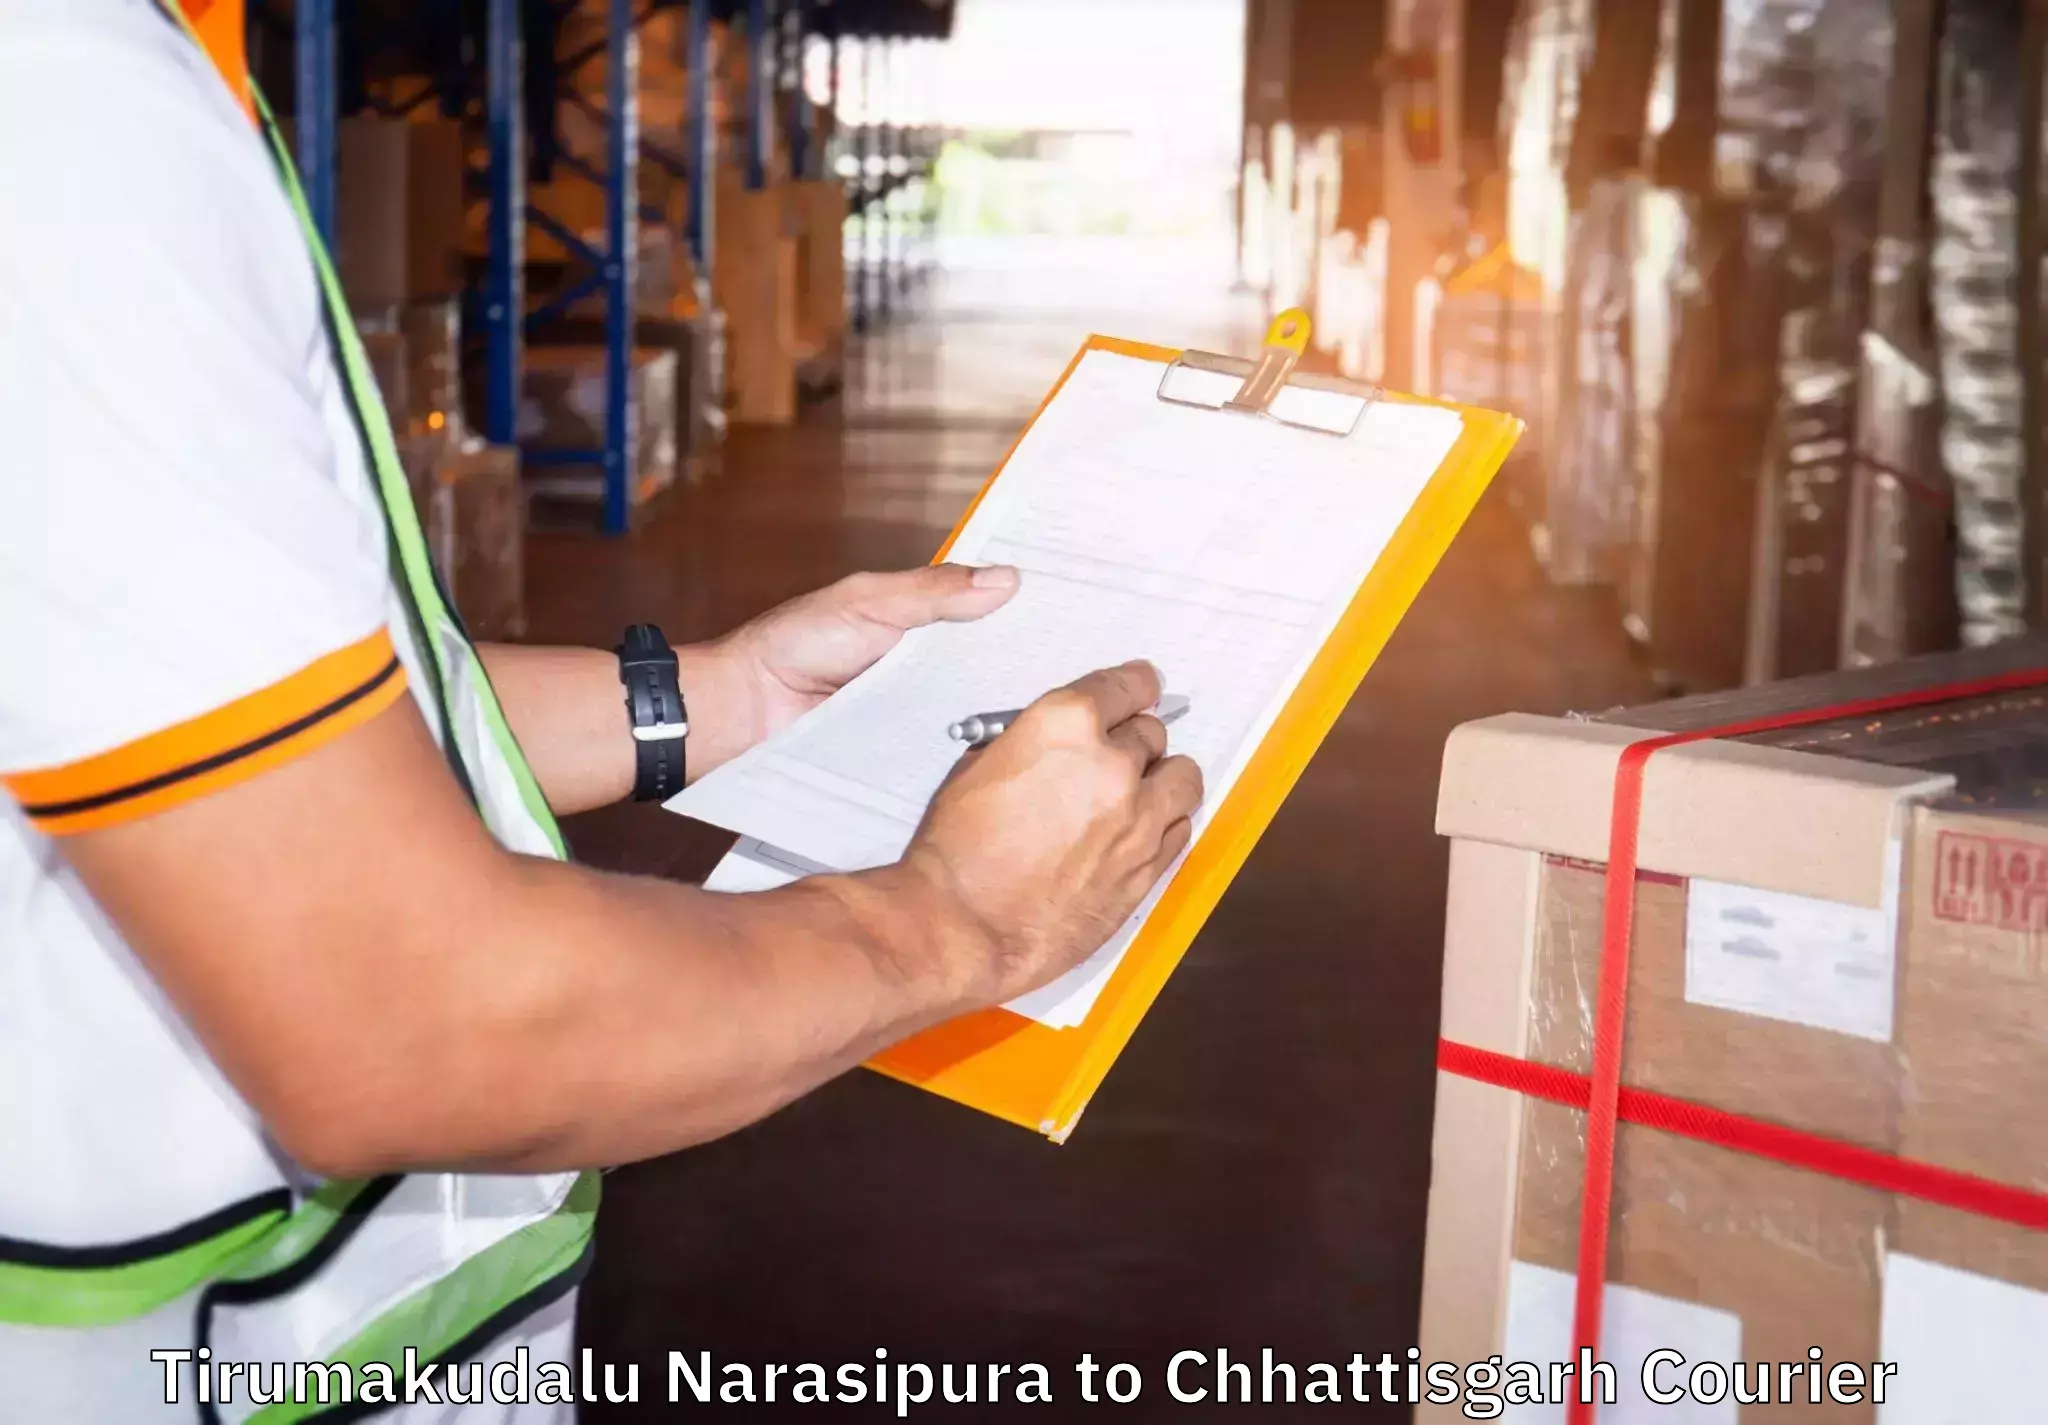 Furniture moving experts Tirumakudalu Narasipura to Mungeli